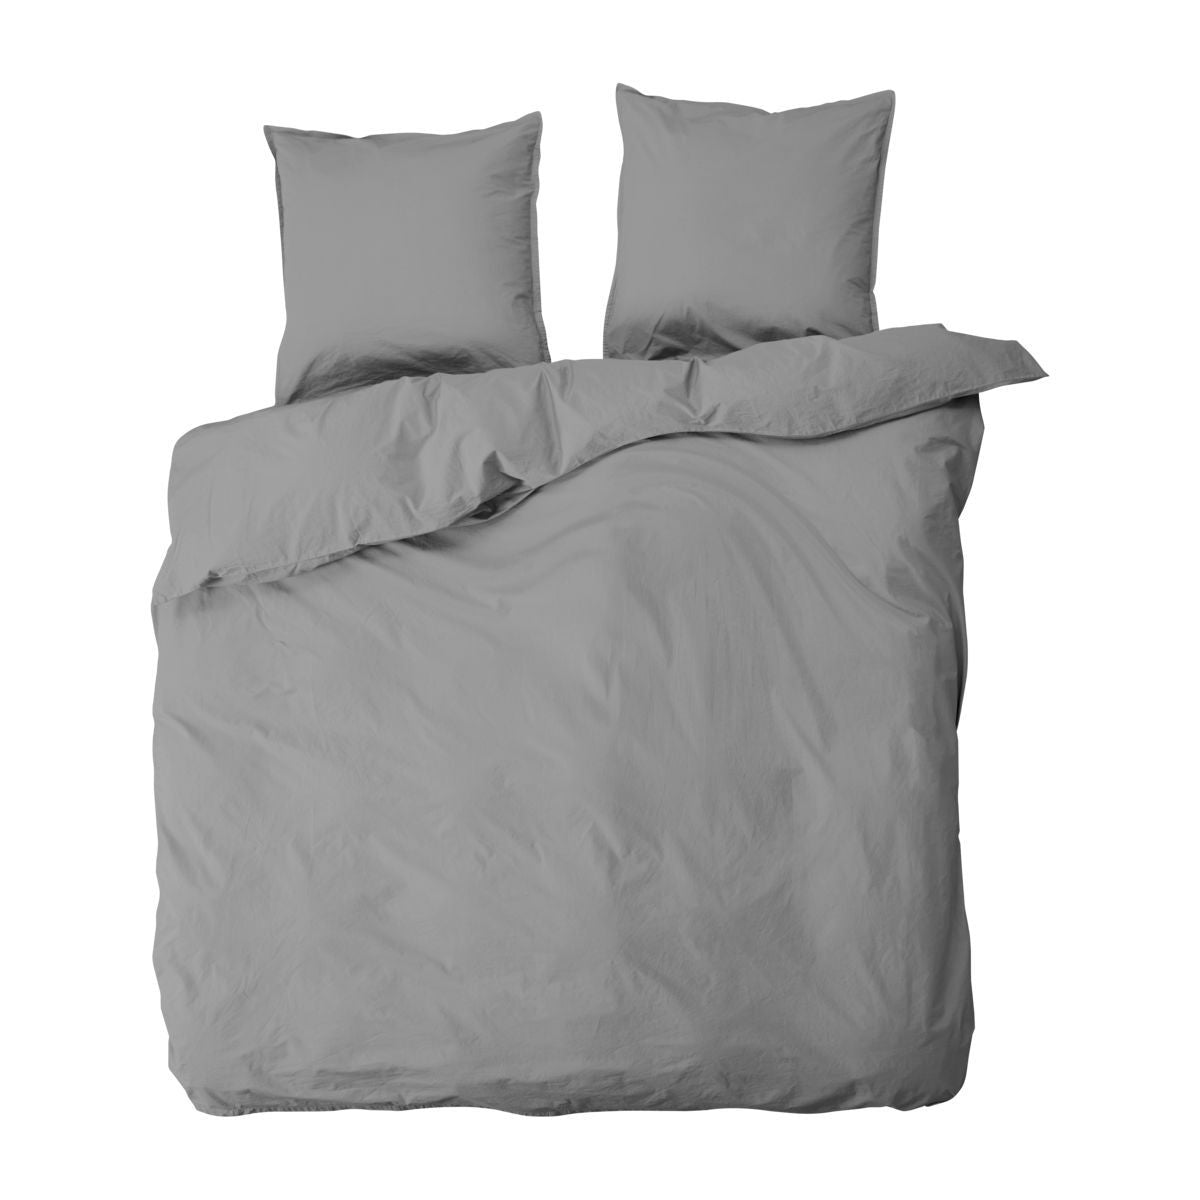 By Nord Dobbelt sengesæt, 200x220cm, Ingrid, Thunder grå